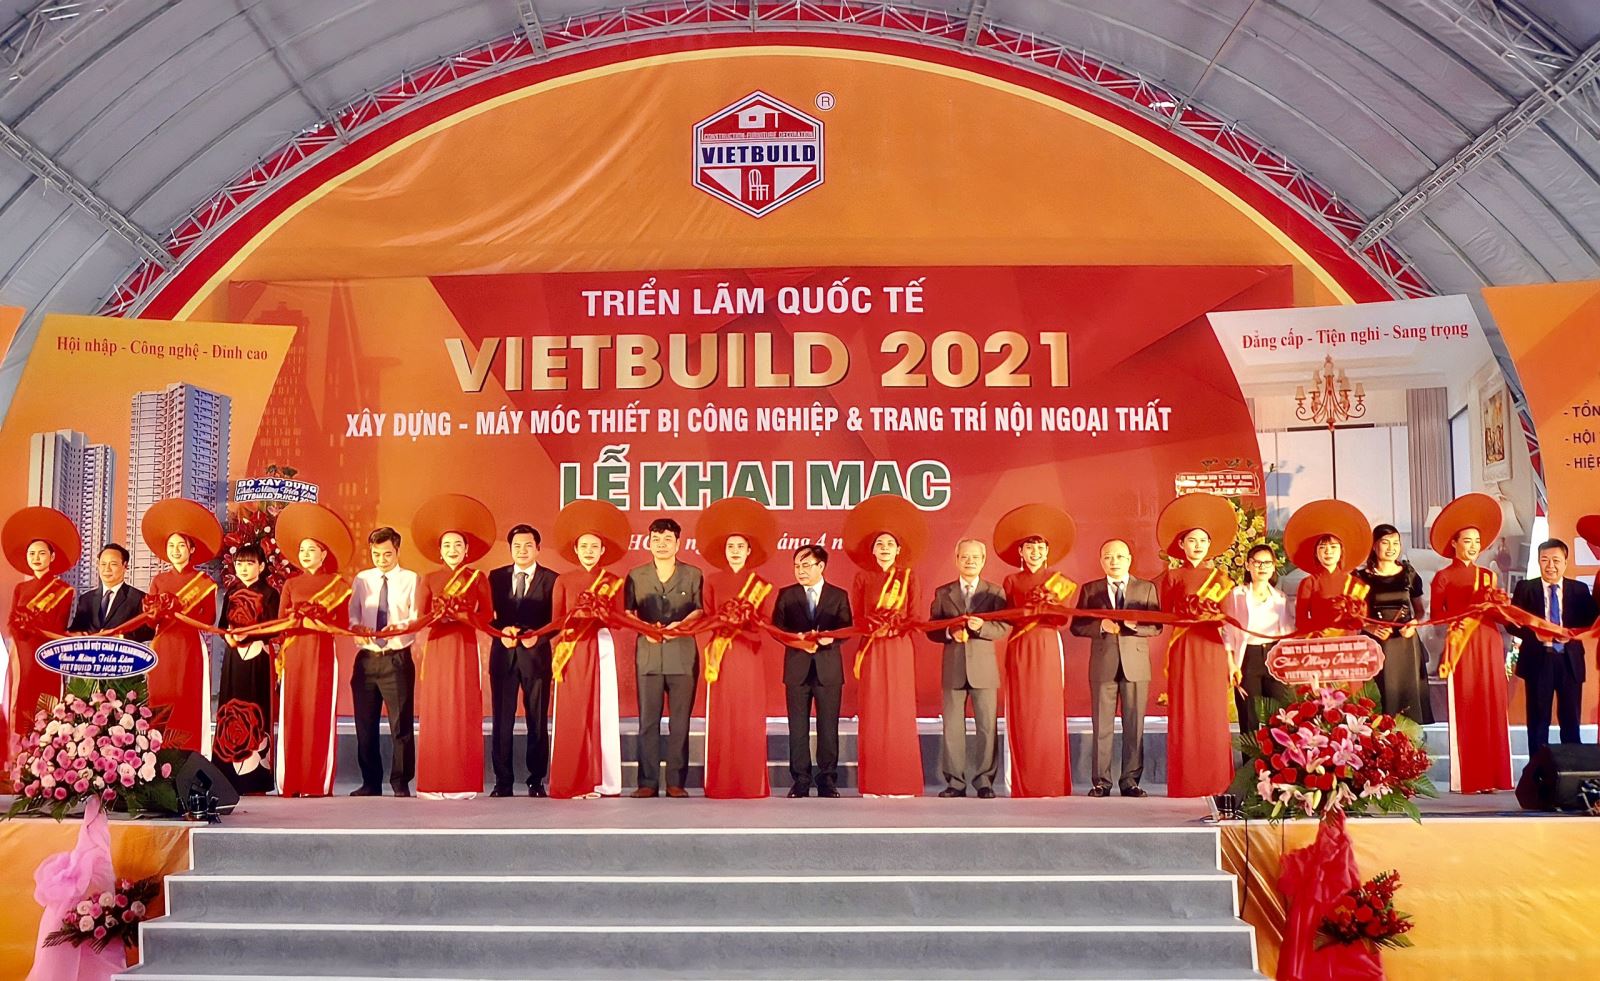 Ông Nguyễn Văn Sinh,Thứ trưởng Bộ Xây dựng, Trưởng ban chỉ đạoTriển lãm Quốc tế Vietbuild (hình đứng thứ 11phải qua) cắt băng khai mạc Triển lãm.